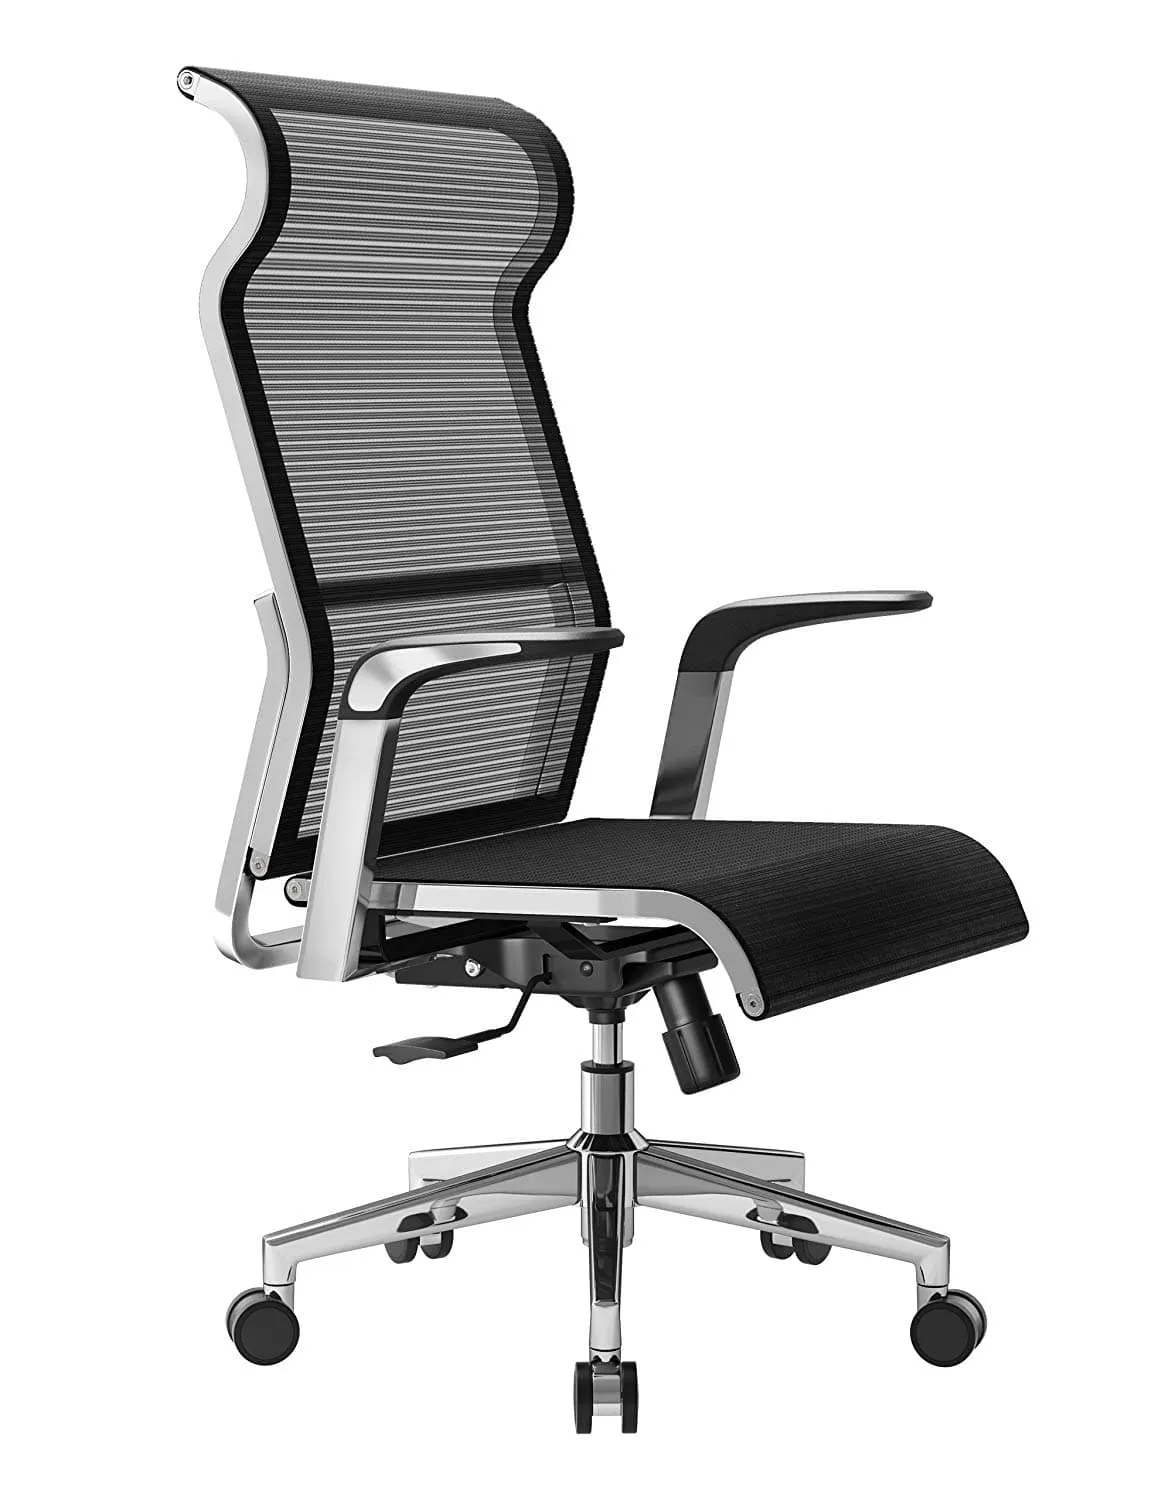 Sedie ergonomiche da ufficio, come scegliere + i principali modelli —  Grafigata!